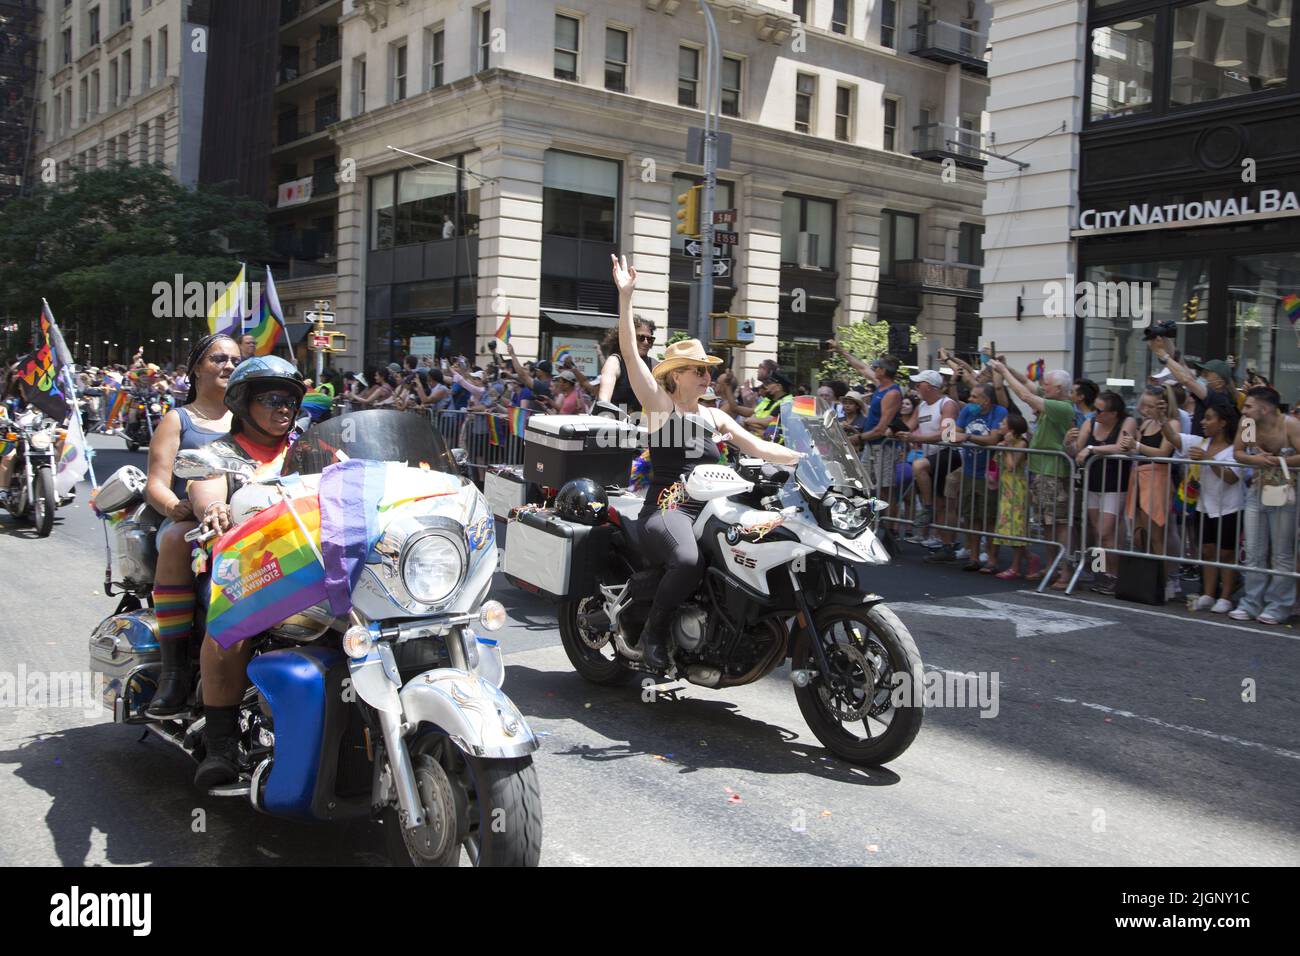 Le défilé annuel gay Pride revient en mars sur 5th Avenue et se termine sur Christopher Street dans Greenwich Village après une pause de 3 ans en raison de la pandémie Covid-19. Les motards se promette dans le défilé. Banque D'Images